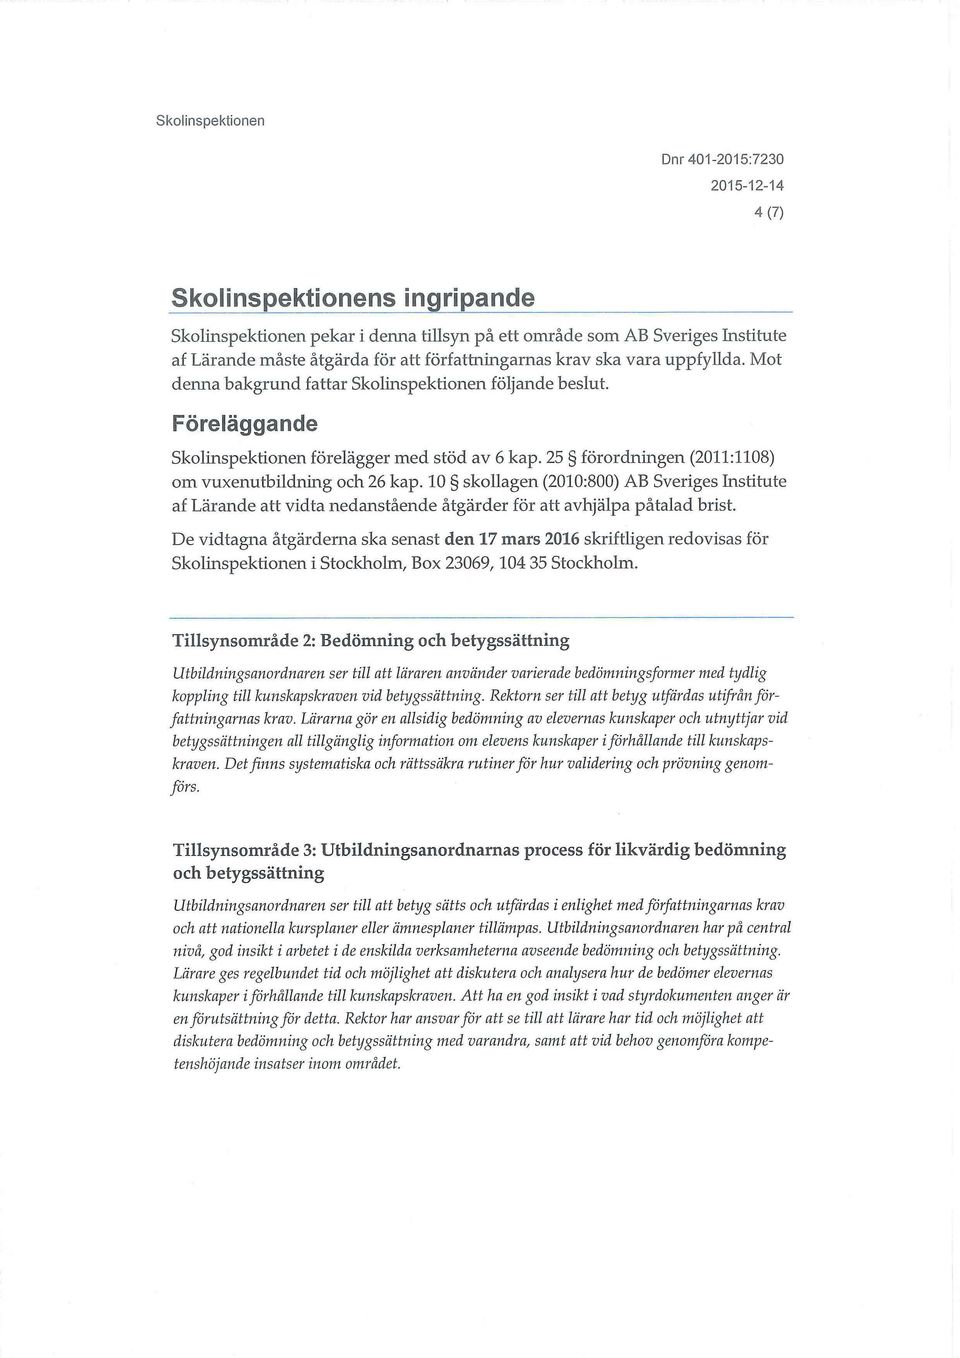 10 skollagen (2010:800) AB Sveriges Institute af Lärande att vidta nedanstående åtgärder för att avhjälpa påtalad brist.